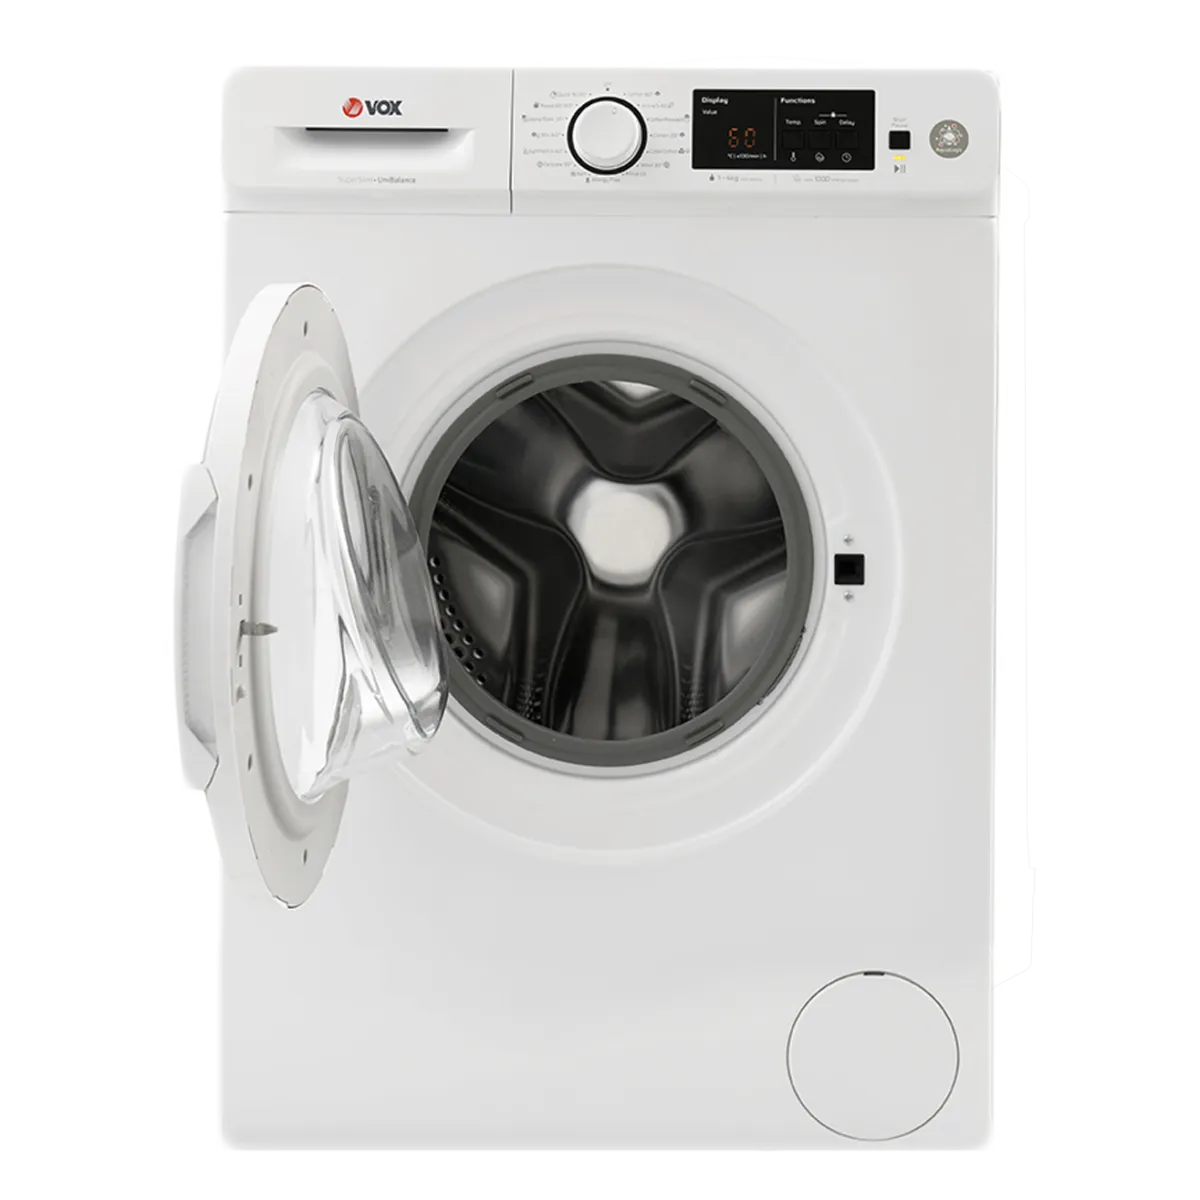 Mašina za pranje veša WM1040-T15D 